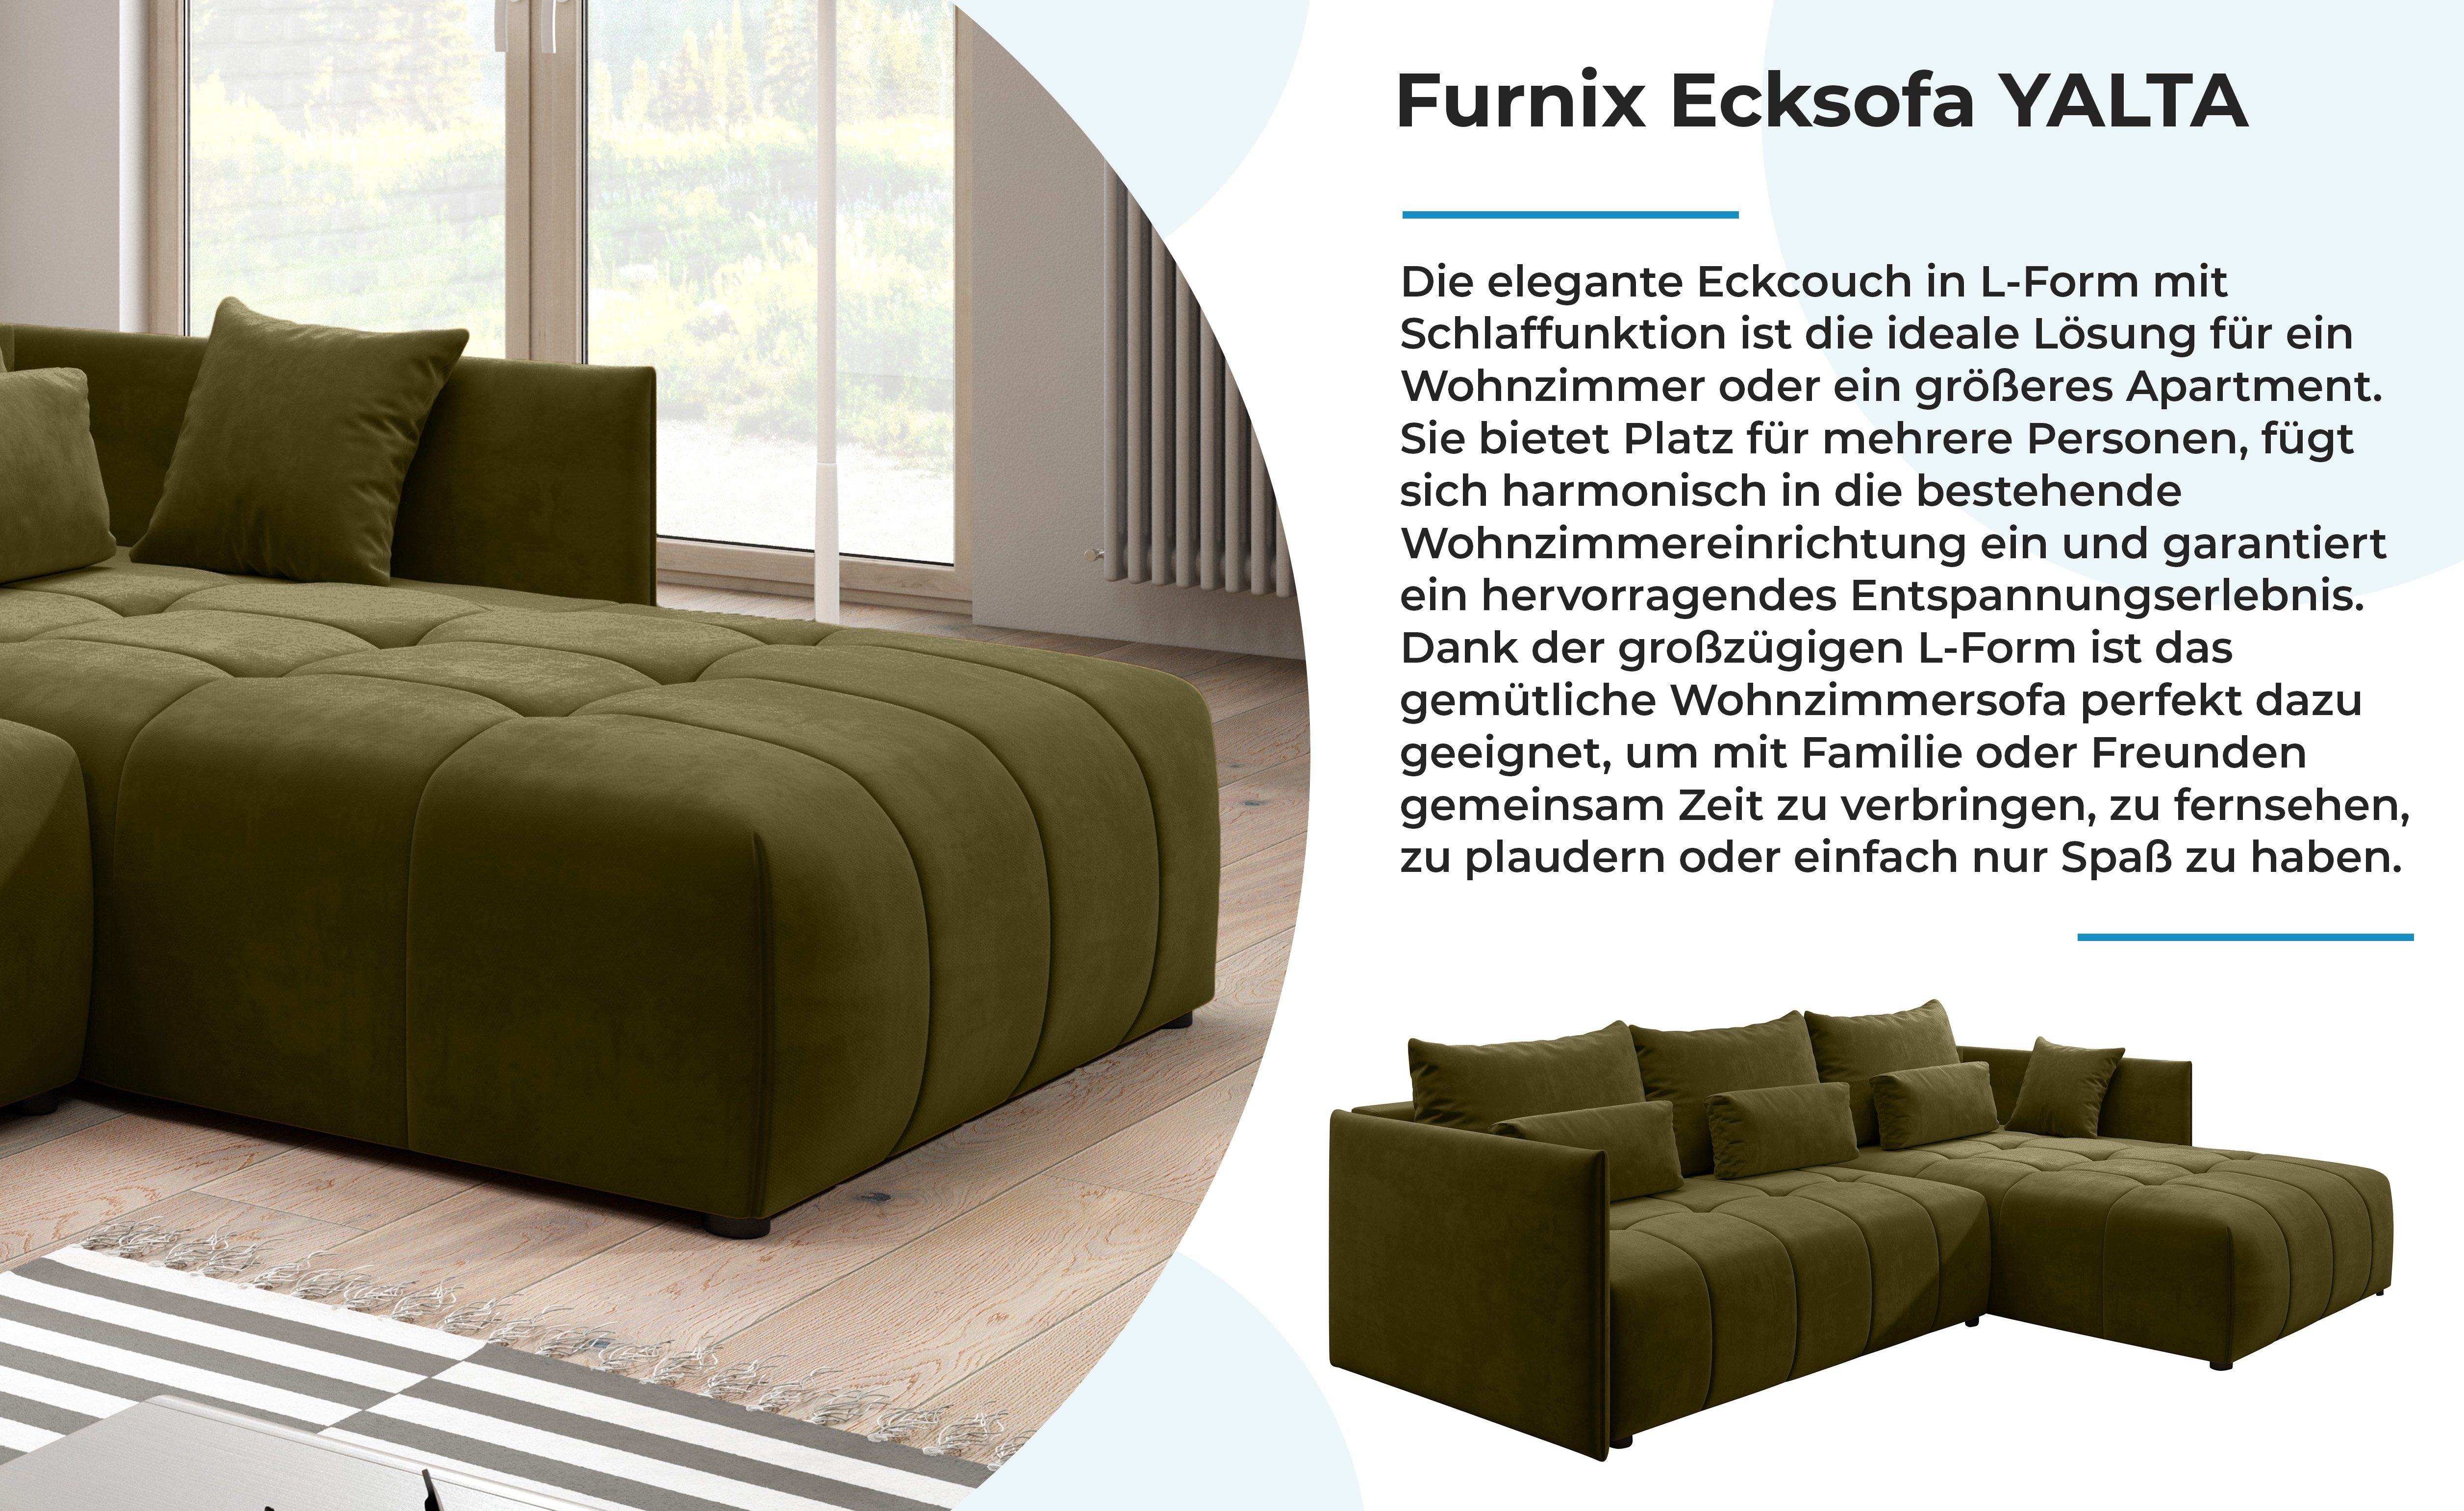 Furnix Ecksofa YALTA Schlafsofa in Bettkasten und Couch Kissen, Europe MH38 Made Moos mit Grün ausziehbar